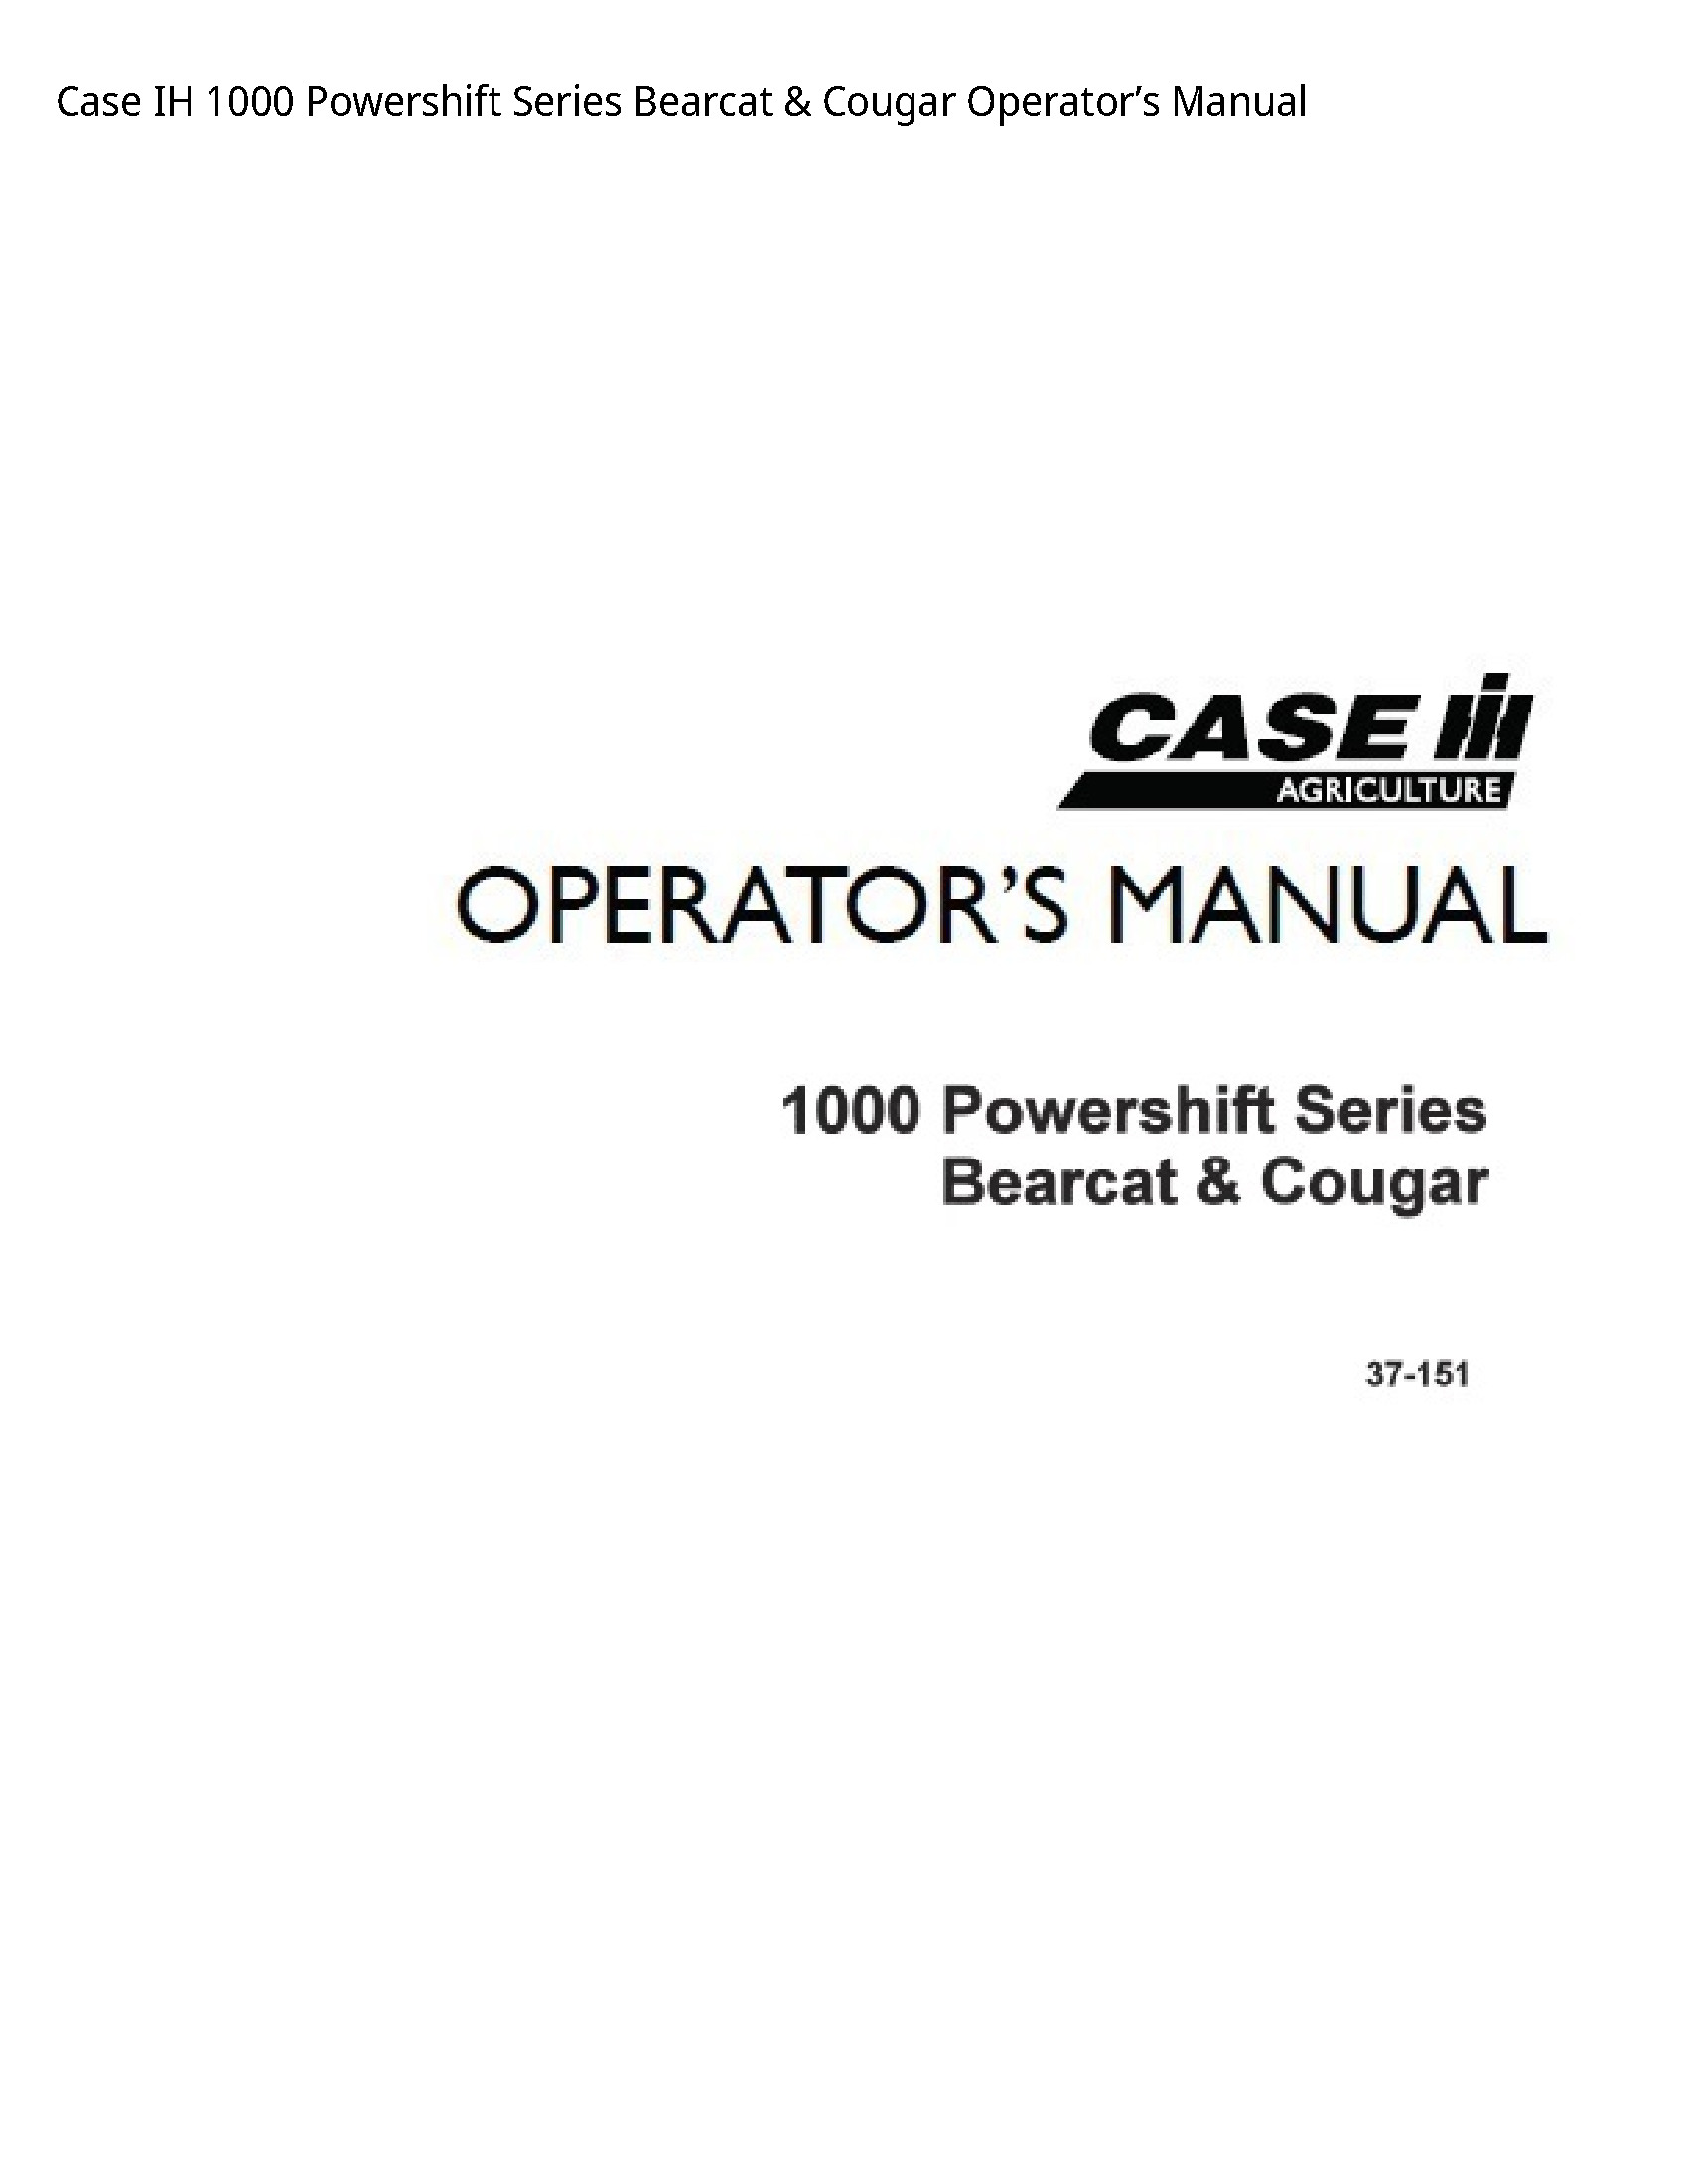 Case/Case IH 1000 IH Powershift Series Bearcat Cougar Operator’s manual